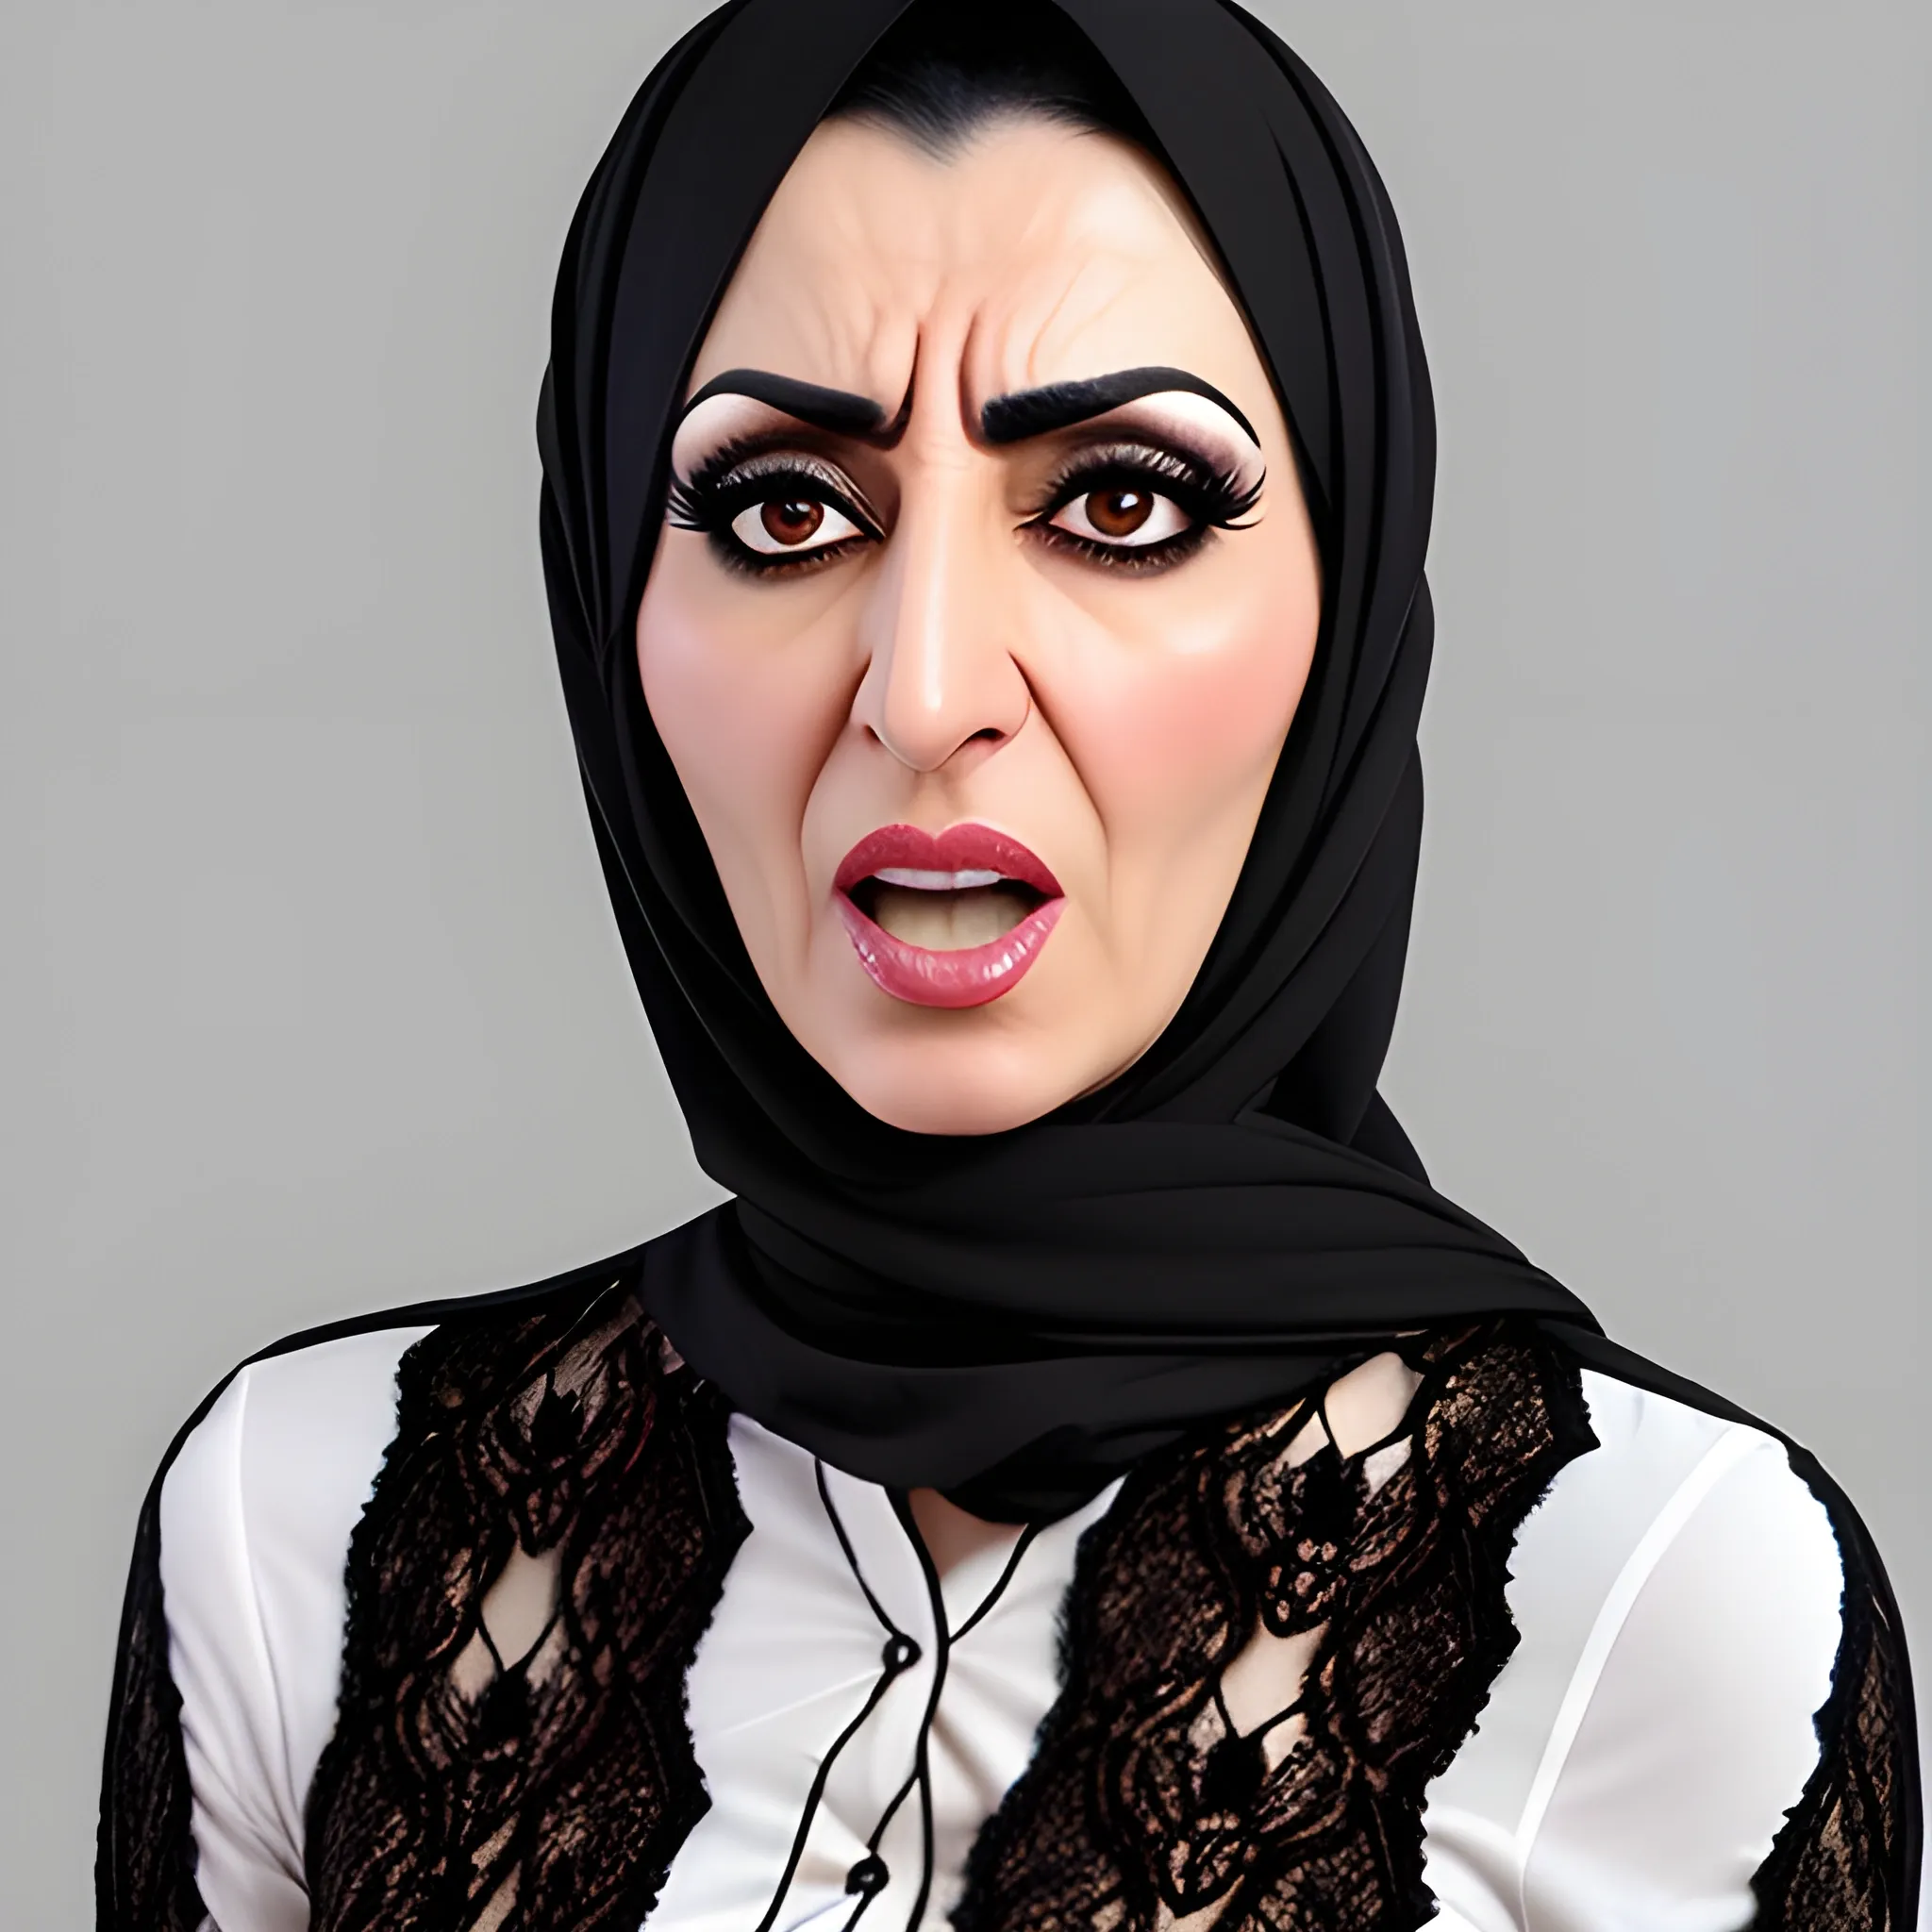 Iranian girl angry